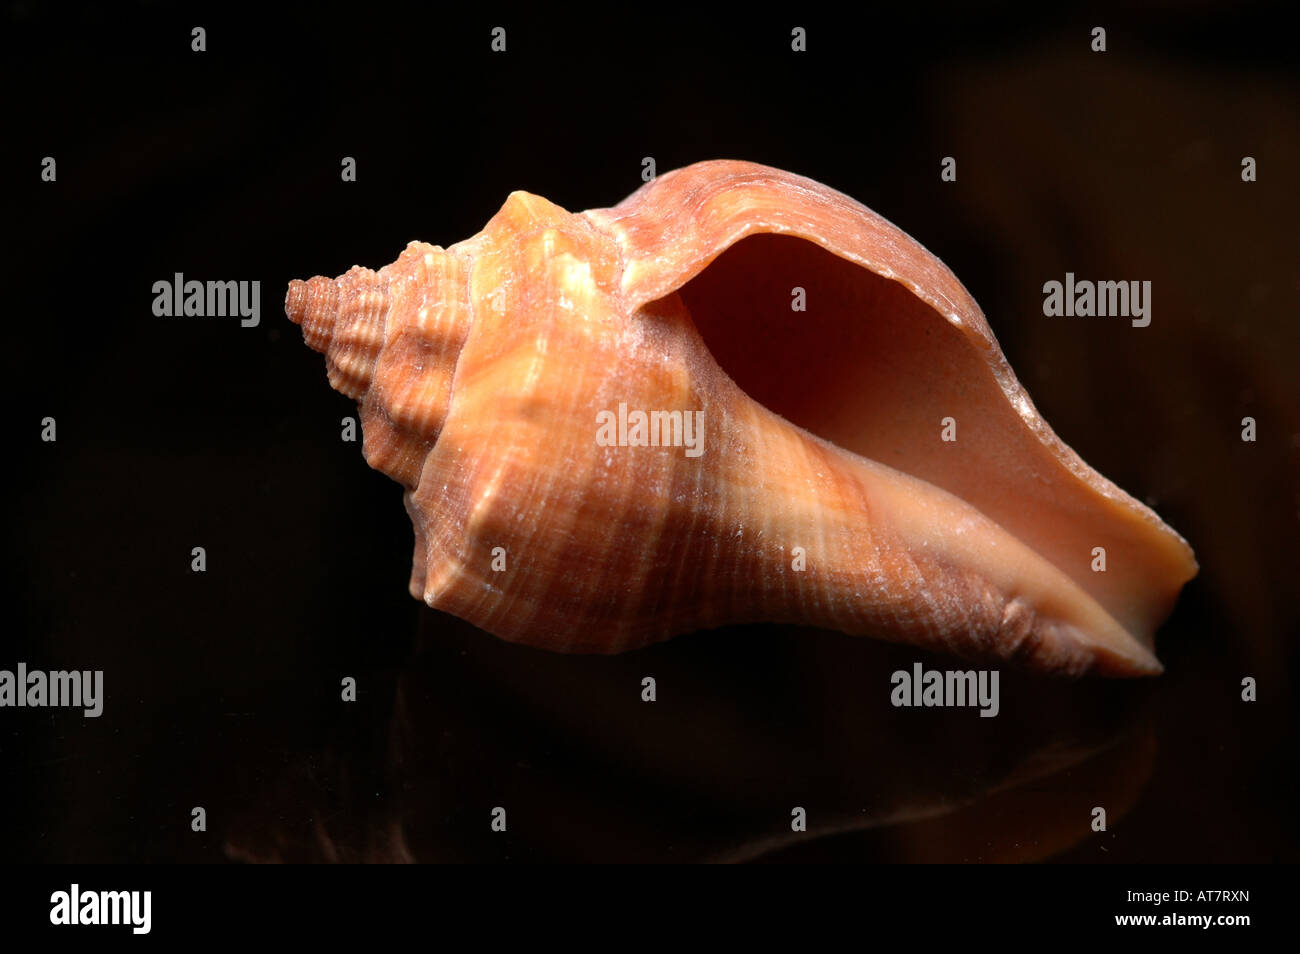 Mollusco modellato molluschi spired shell " animali shell' natura calcarea memento di souvenir Foto Stock